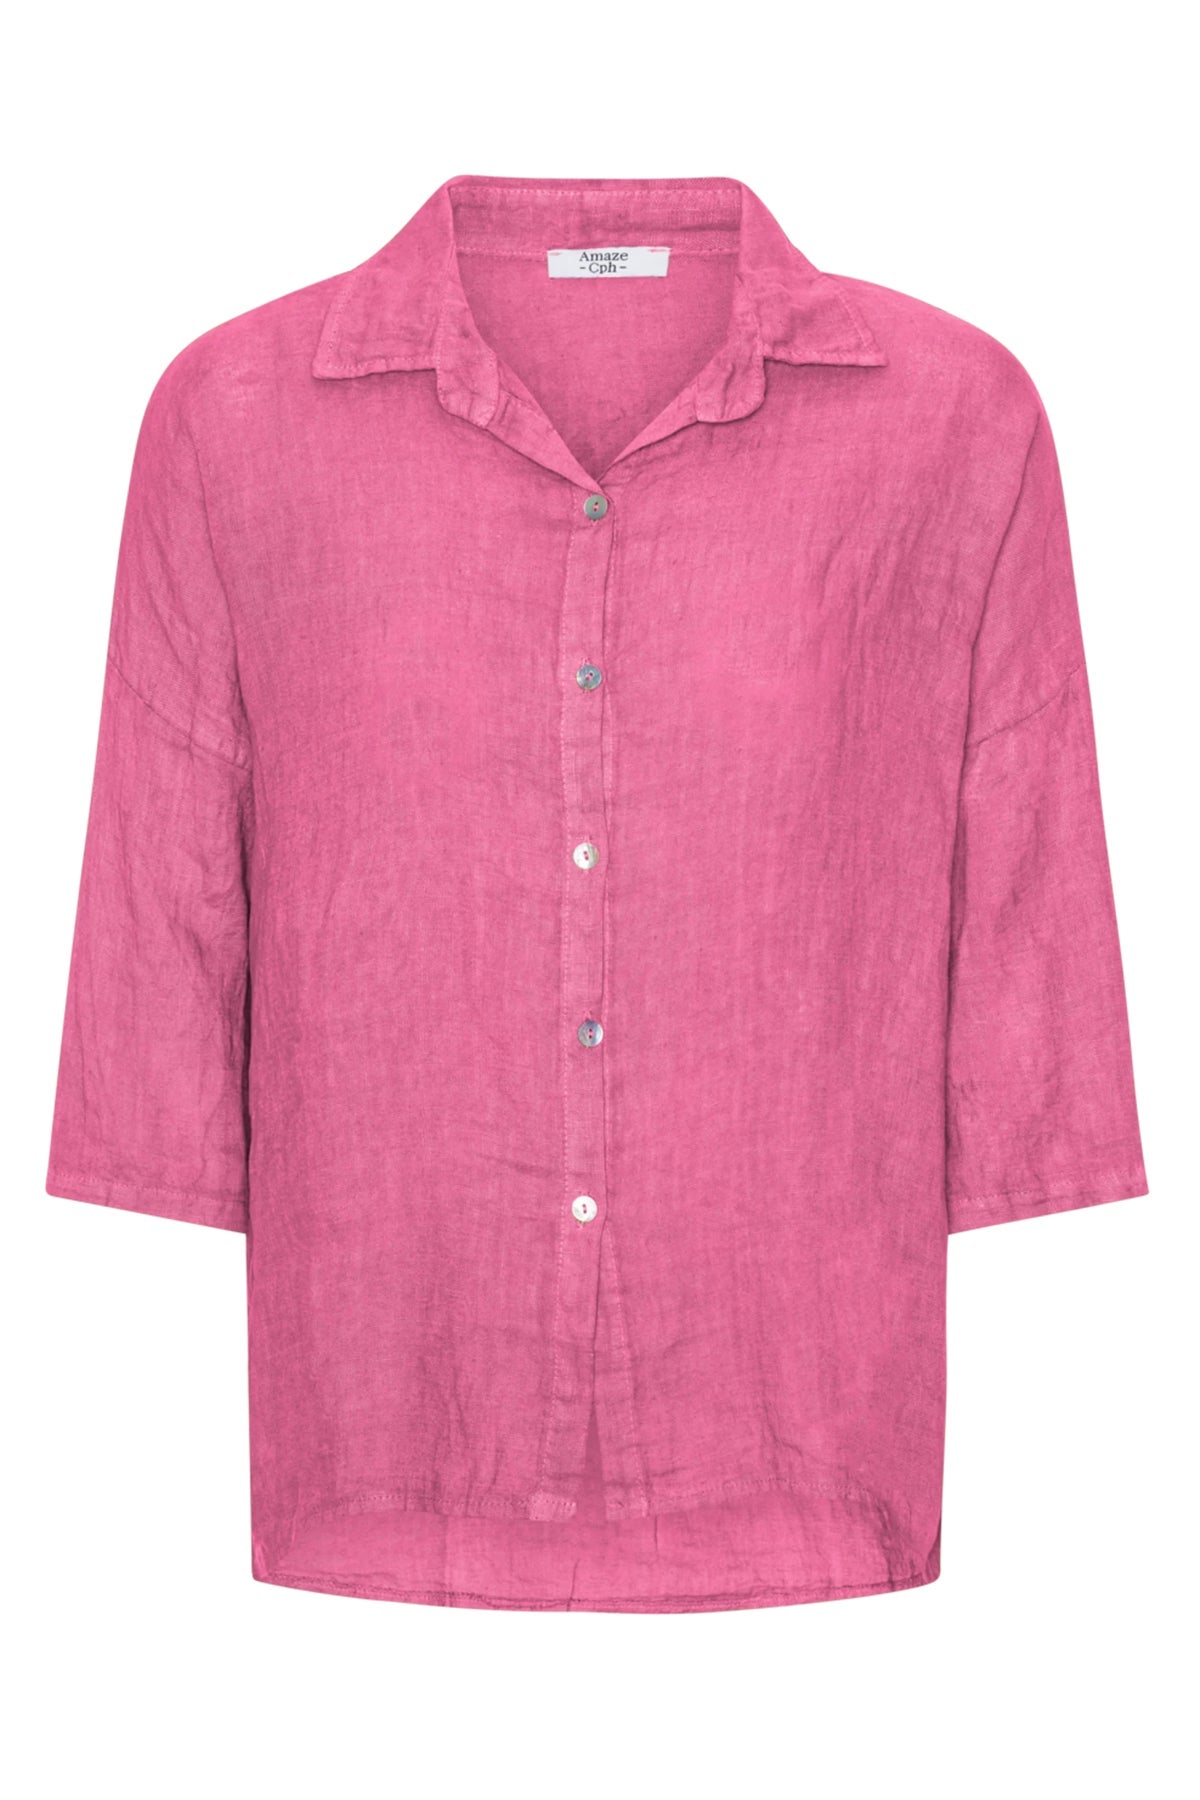 Amaze Hør Skjorte #farve_pink